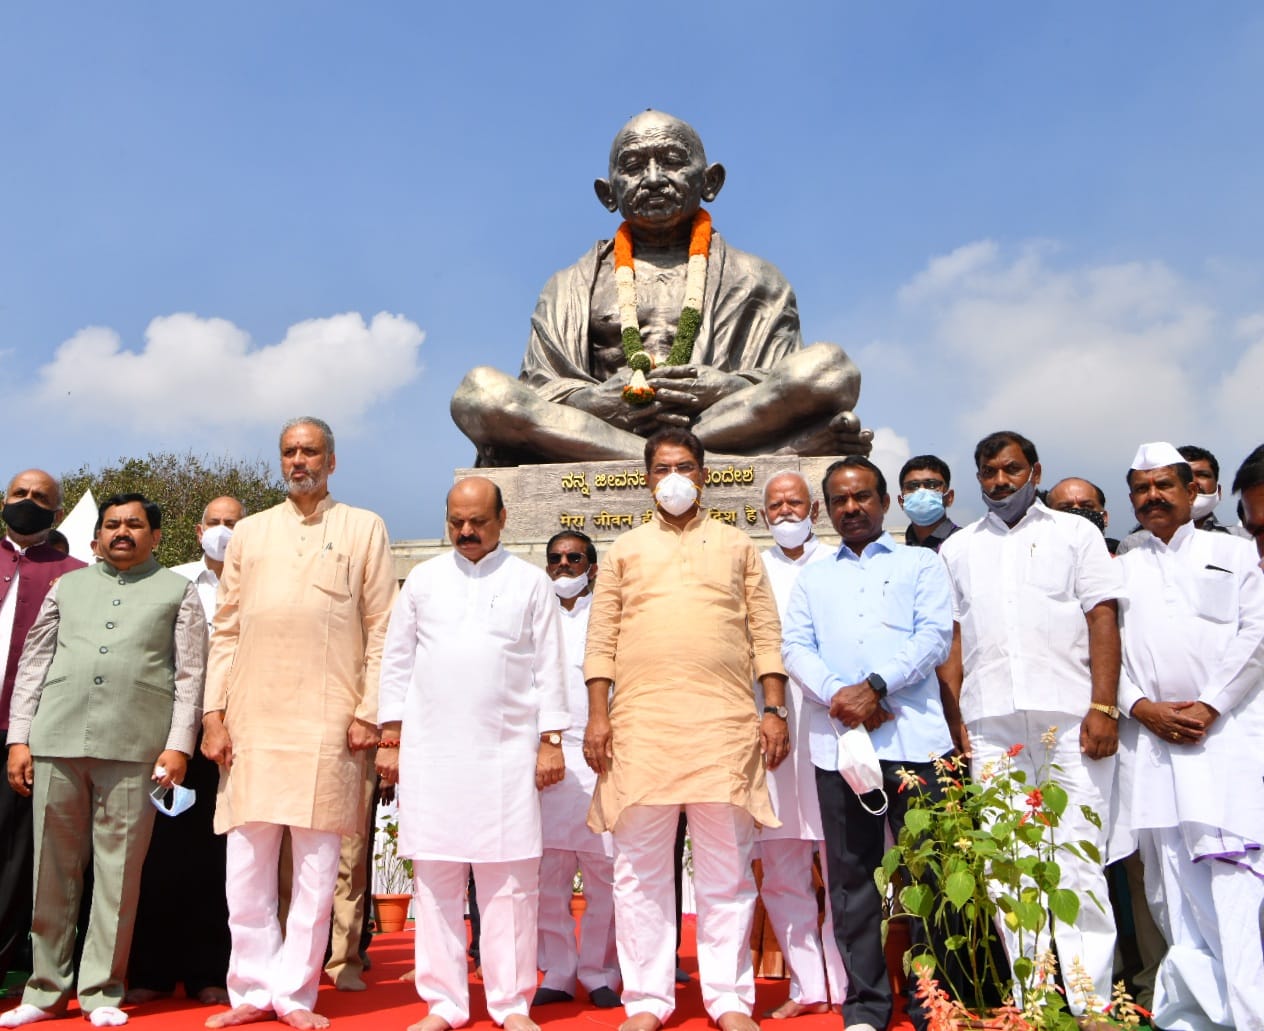 Sarvodaya Day Karnataka CM paid Homage to Mahatma Gandhi